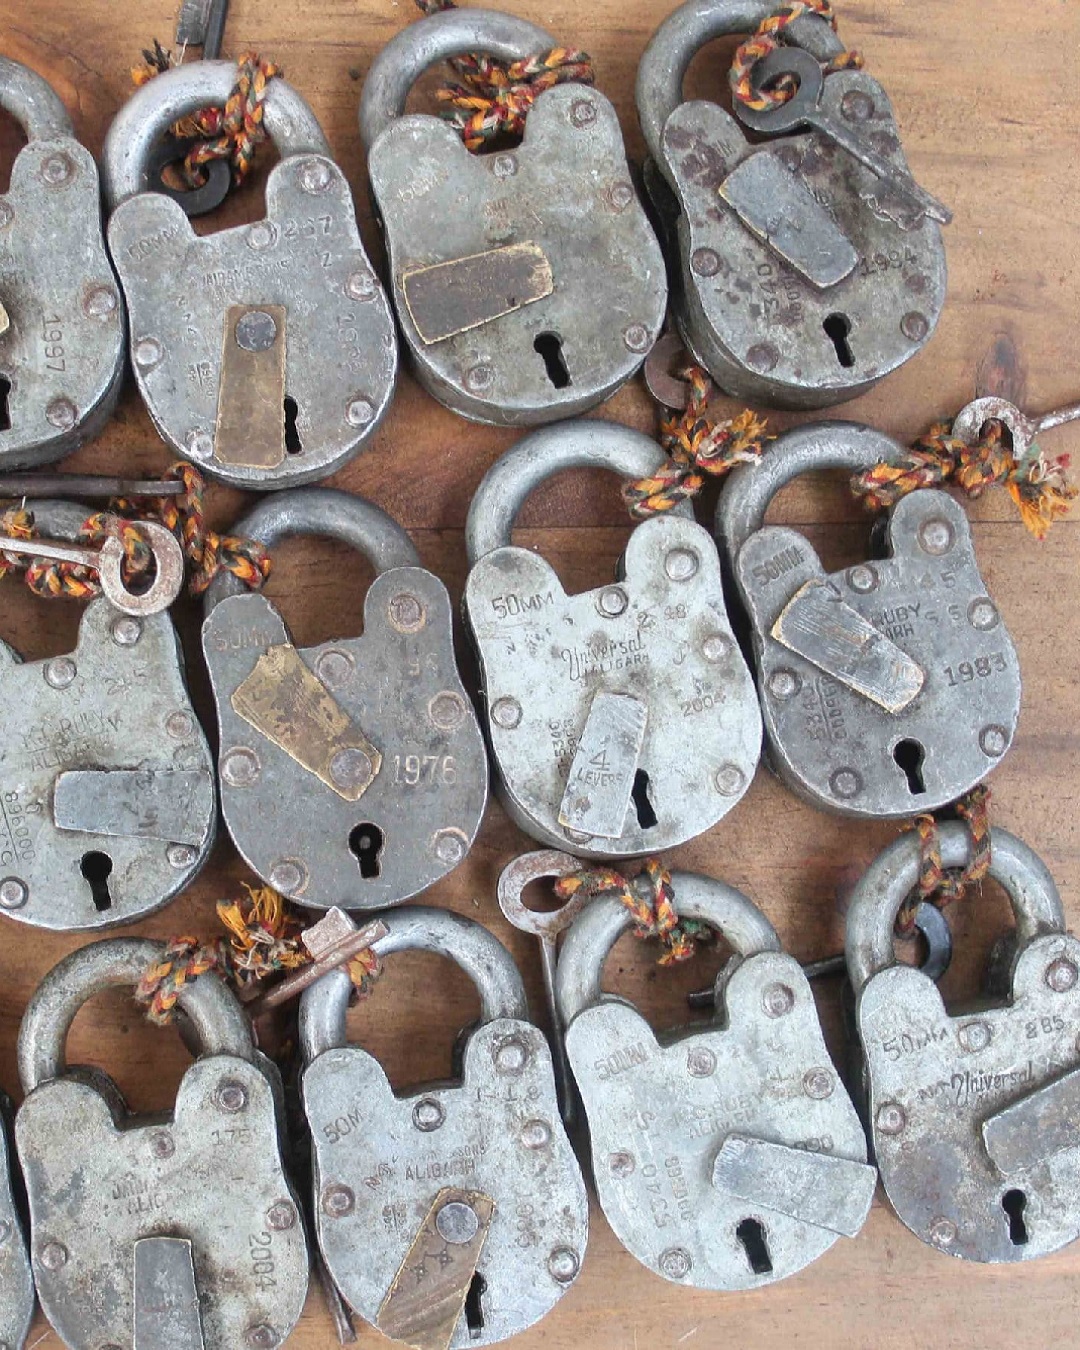 Vintage railway padlocks on table